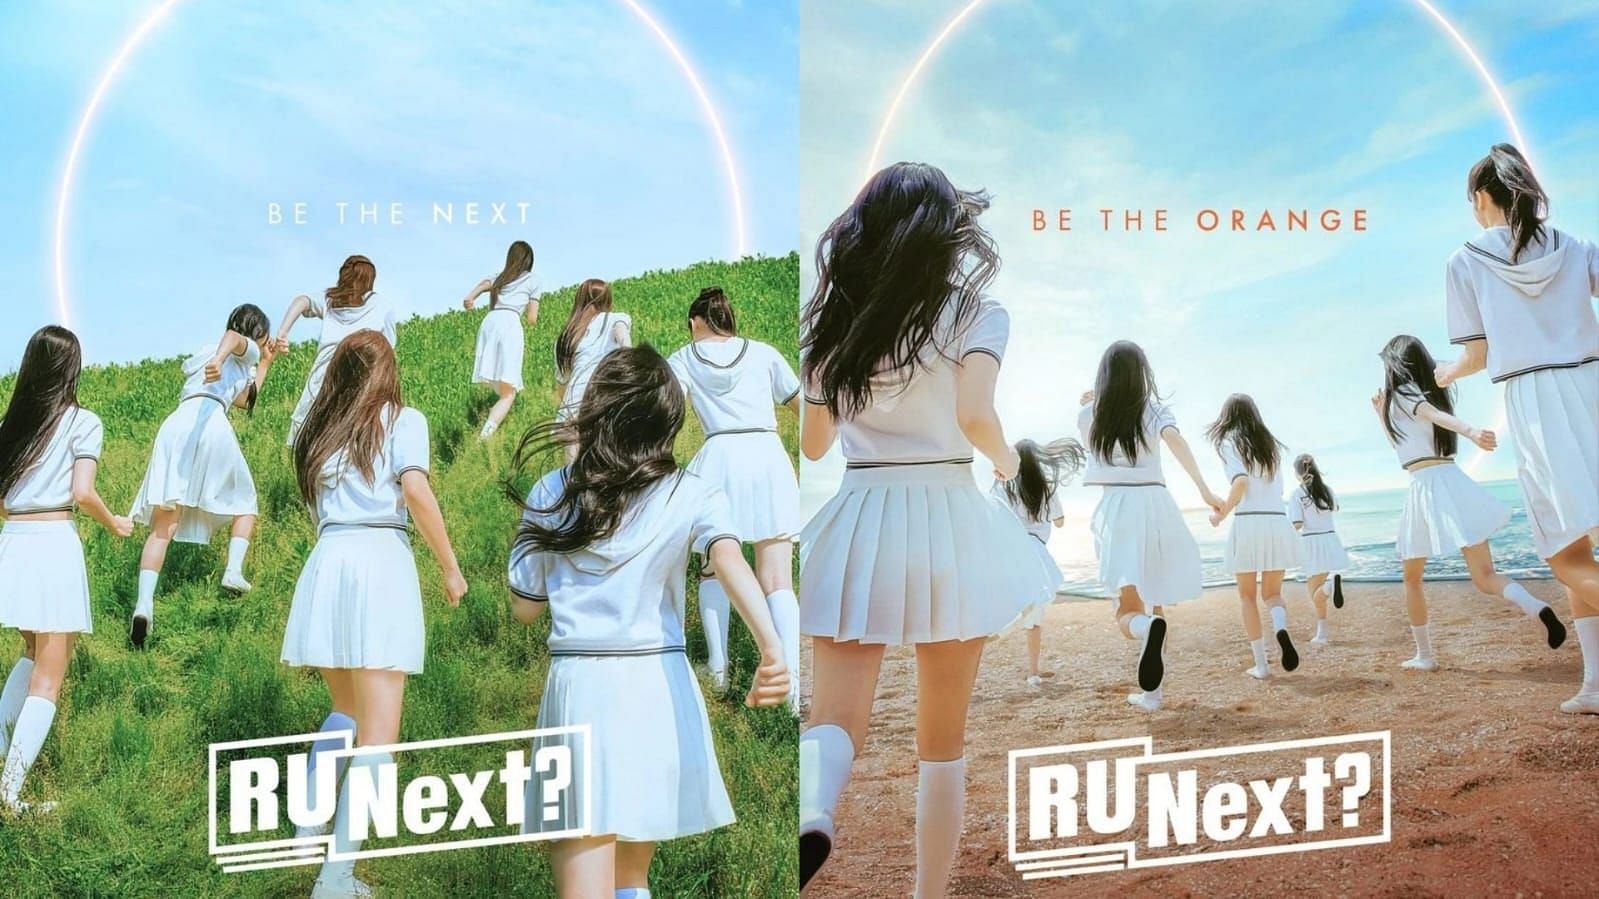 R U Next? (Image via Instagram/@runext_official)